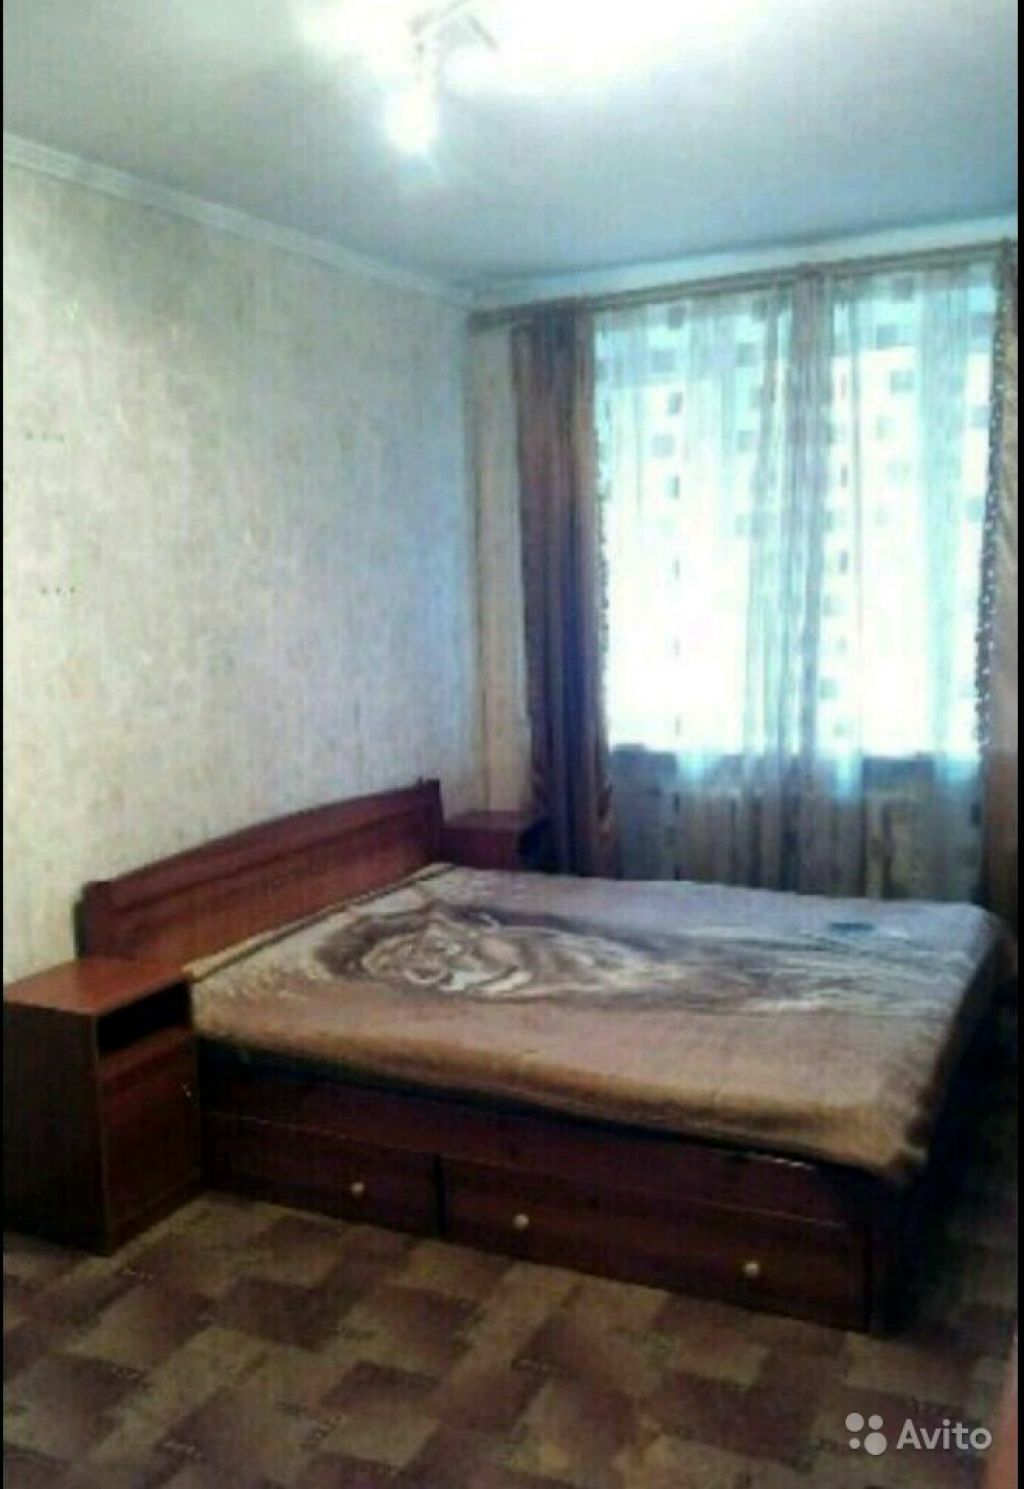 Сдам квартиру 2-к квартира 41 м² на 1 этаже 5-этажного кирпичного дома в Москве. Фото 1